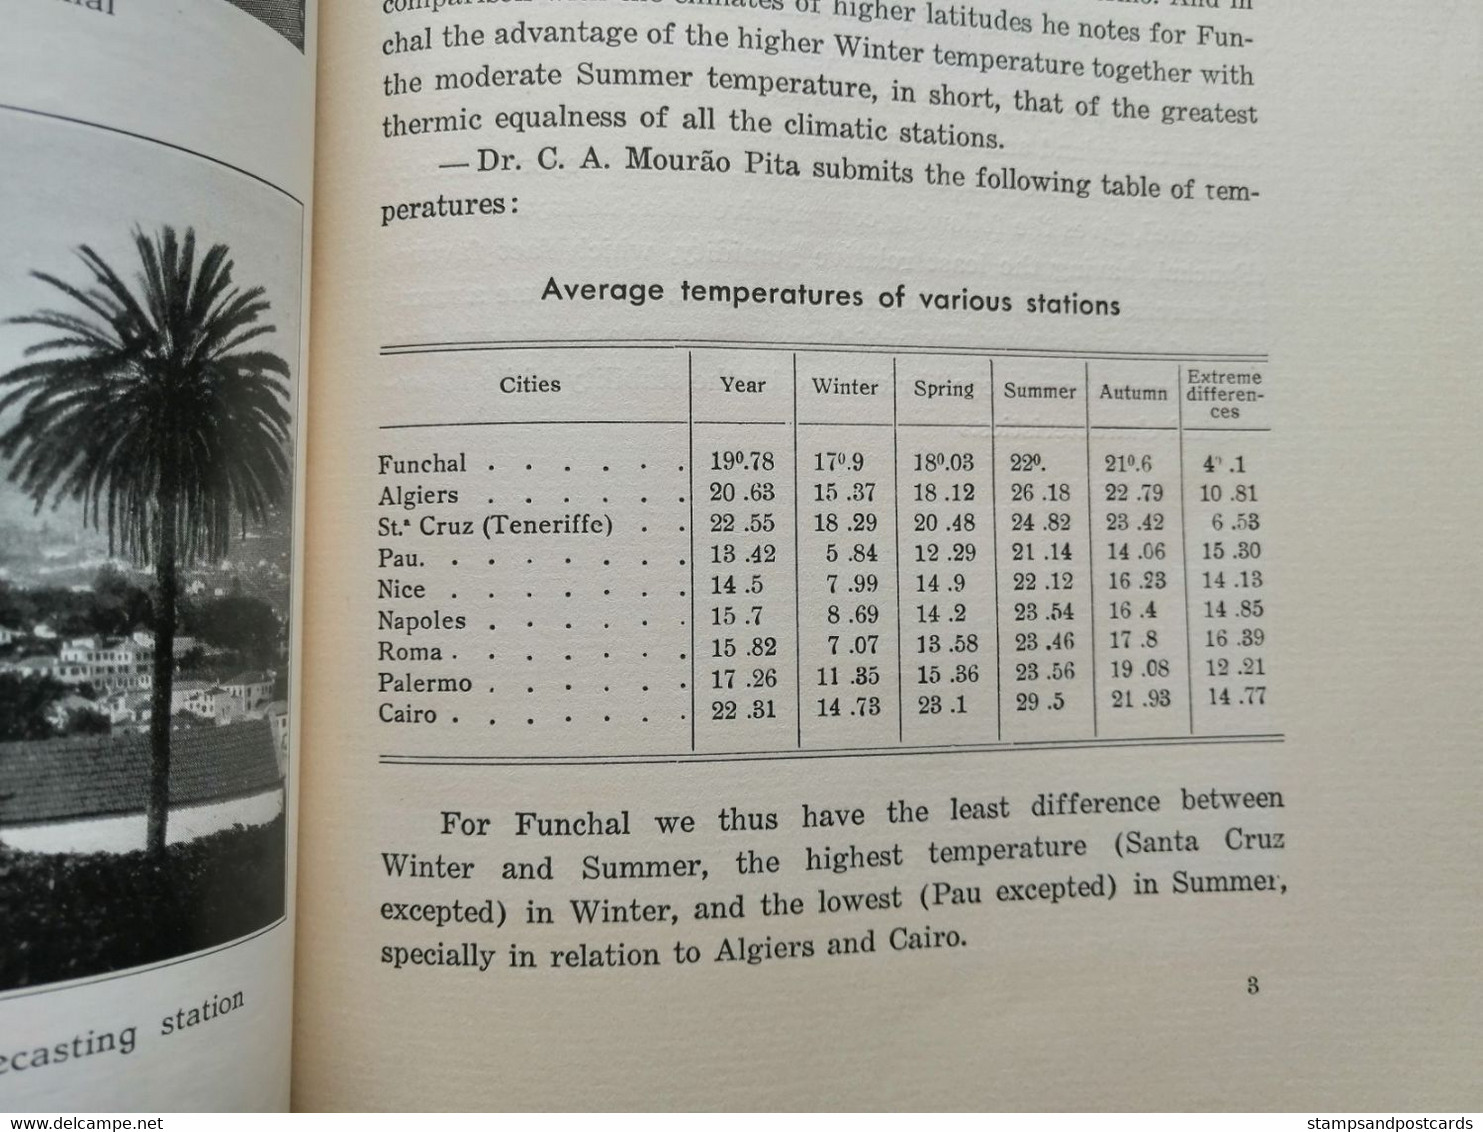 Book The Climate of Madeira with a comparative study, Madeira island, Hugo de Lacerda Castelo Branco, 1938